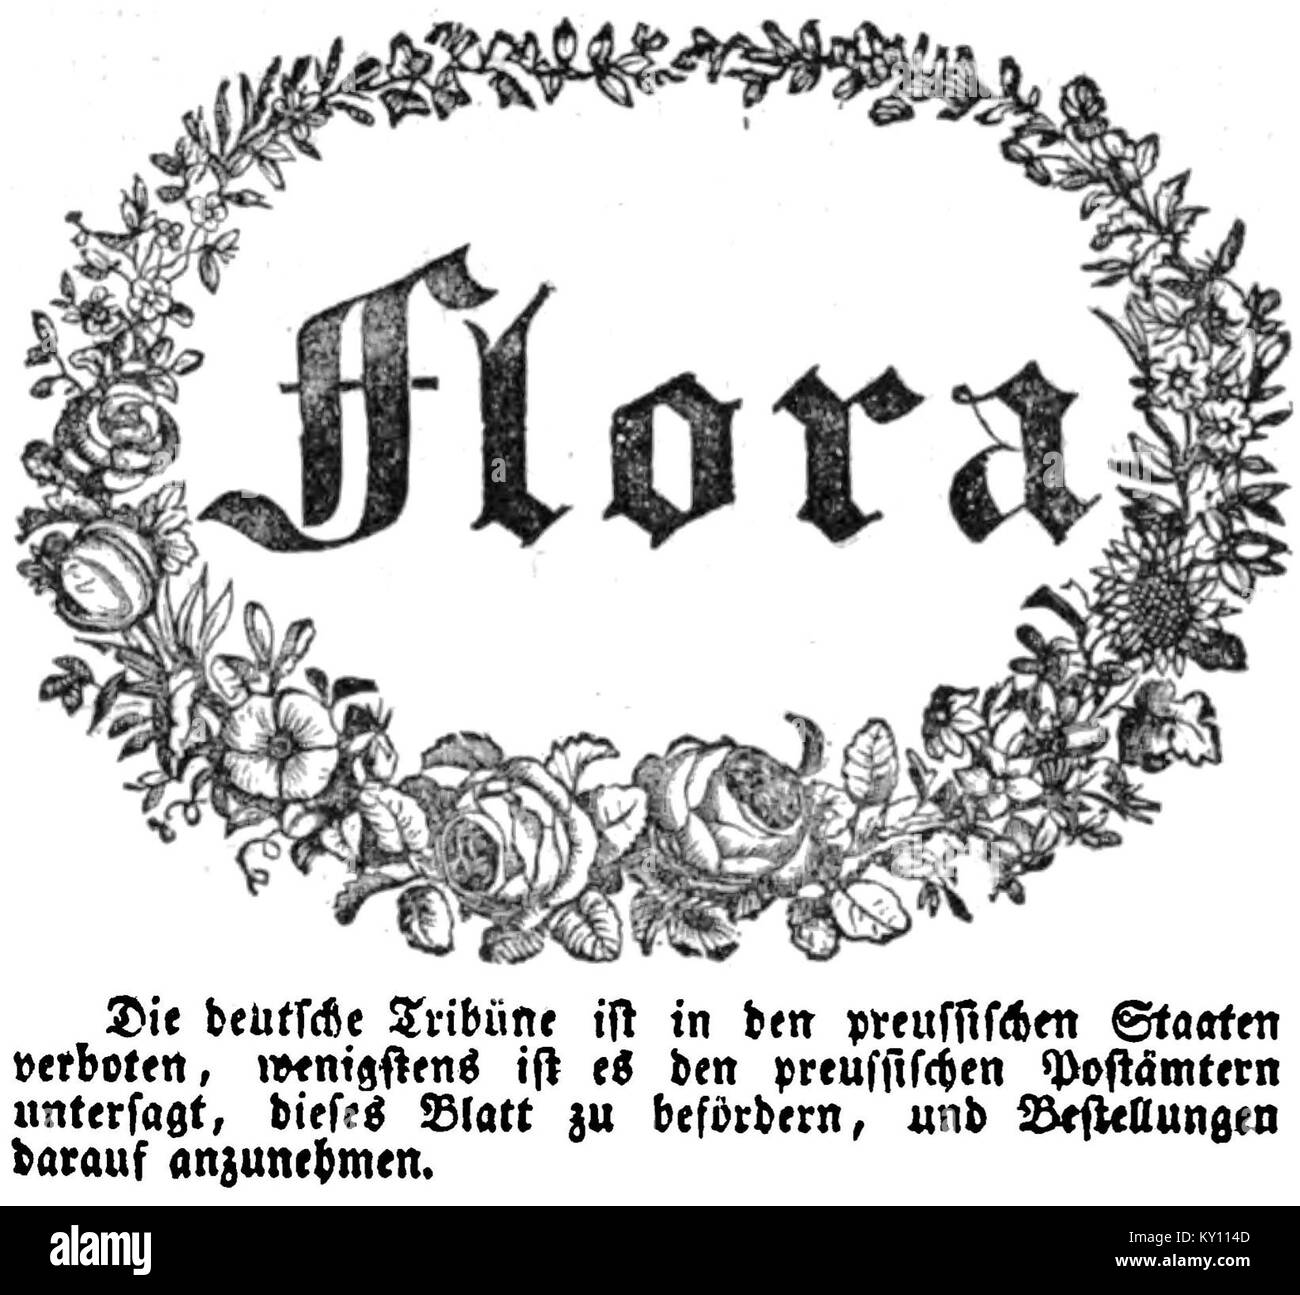 Flora Nr 69 - 29. July 1831 - München - Anzeige in Neuigkeiten Preußen verbietet die deutsche Tribüne Stock Photo